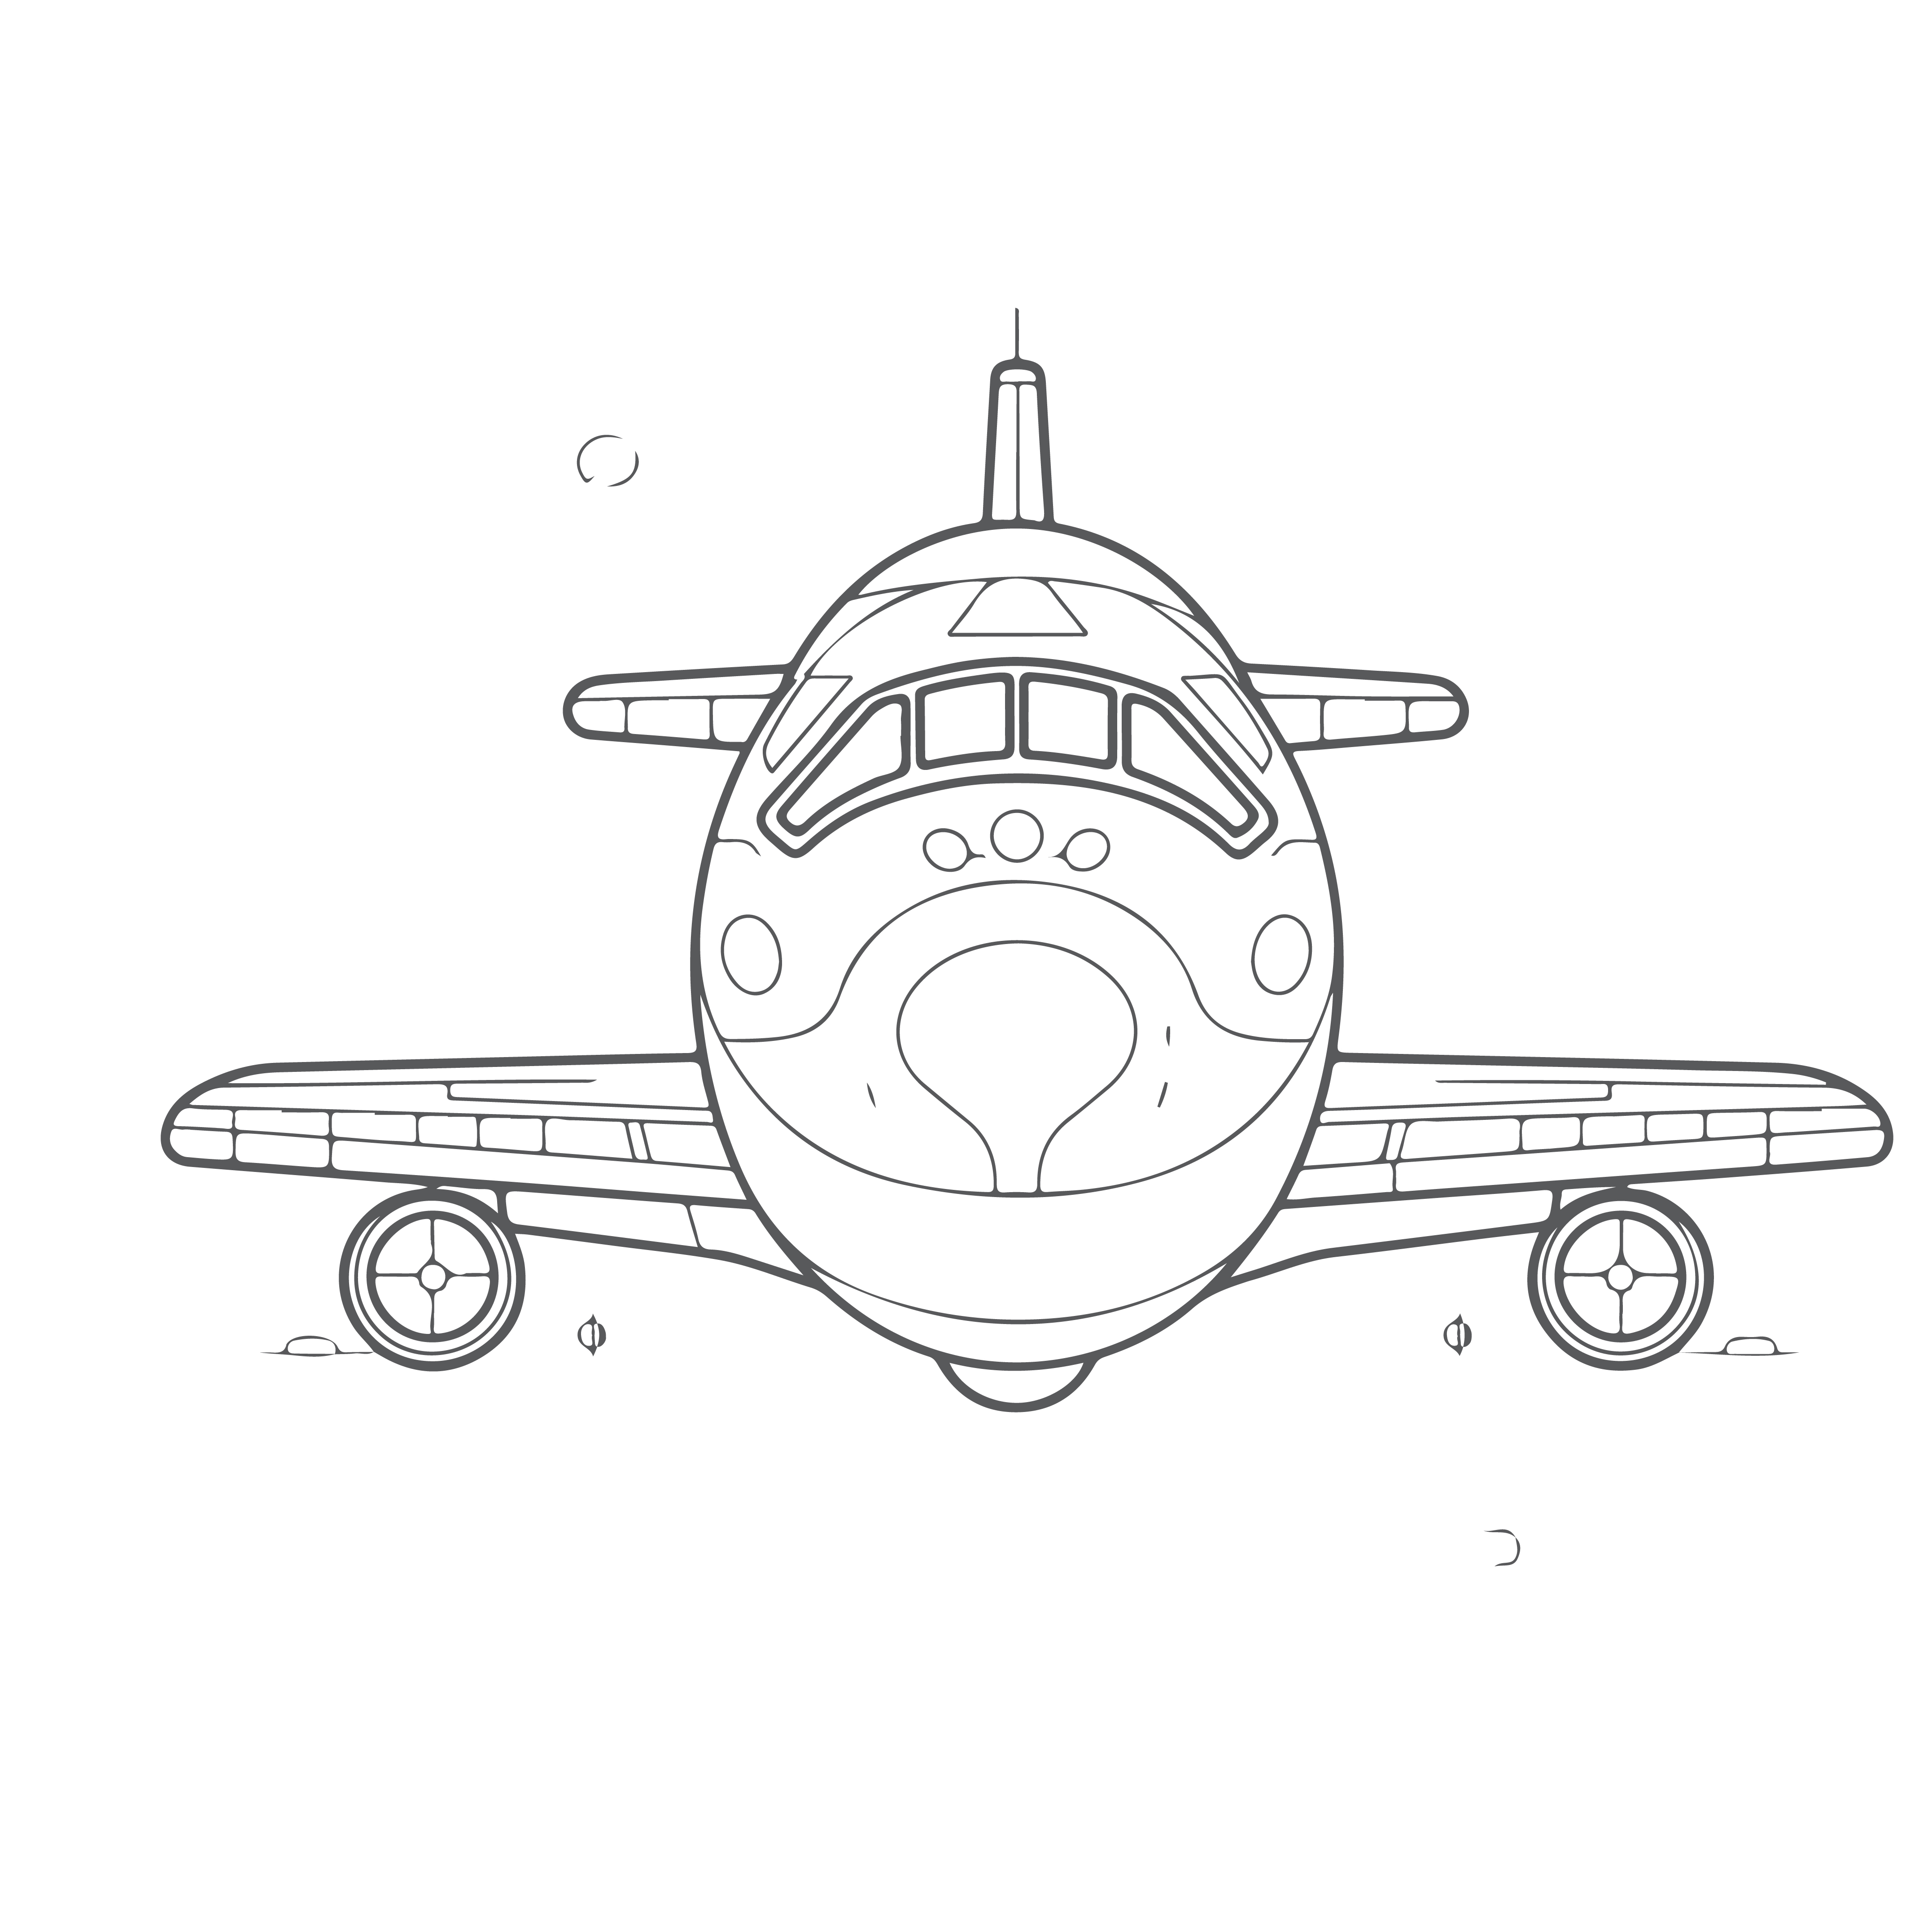 Раскраска самолет «Авиационная фантазия» формата А4 в высоком качестве